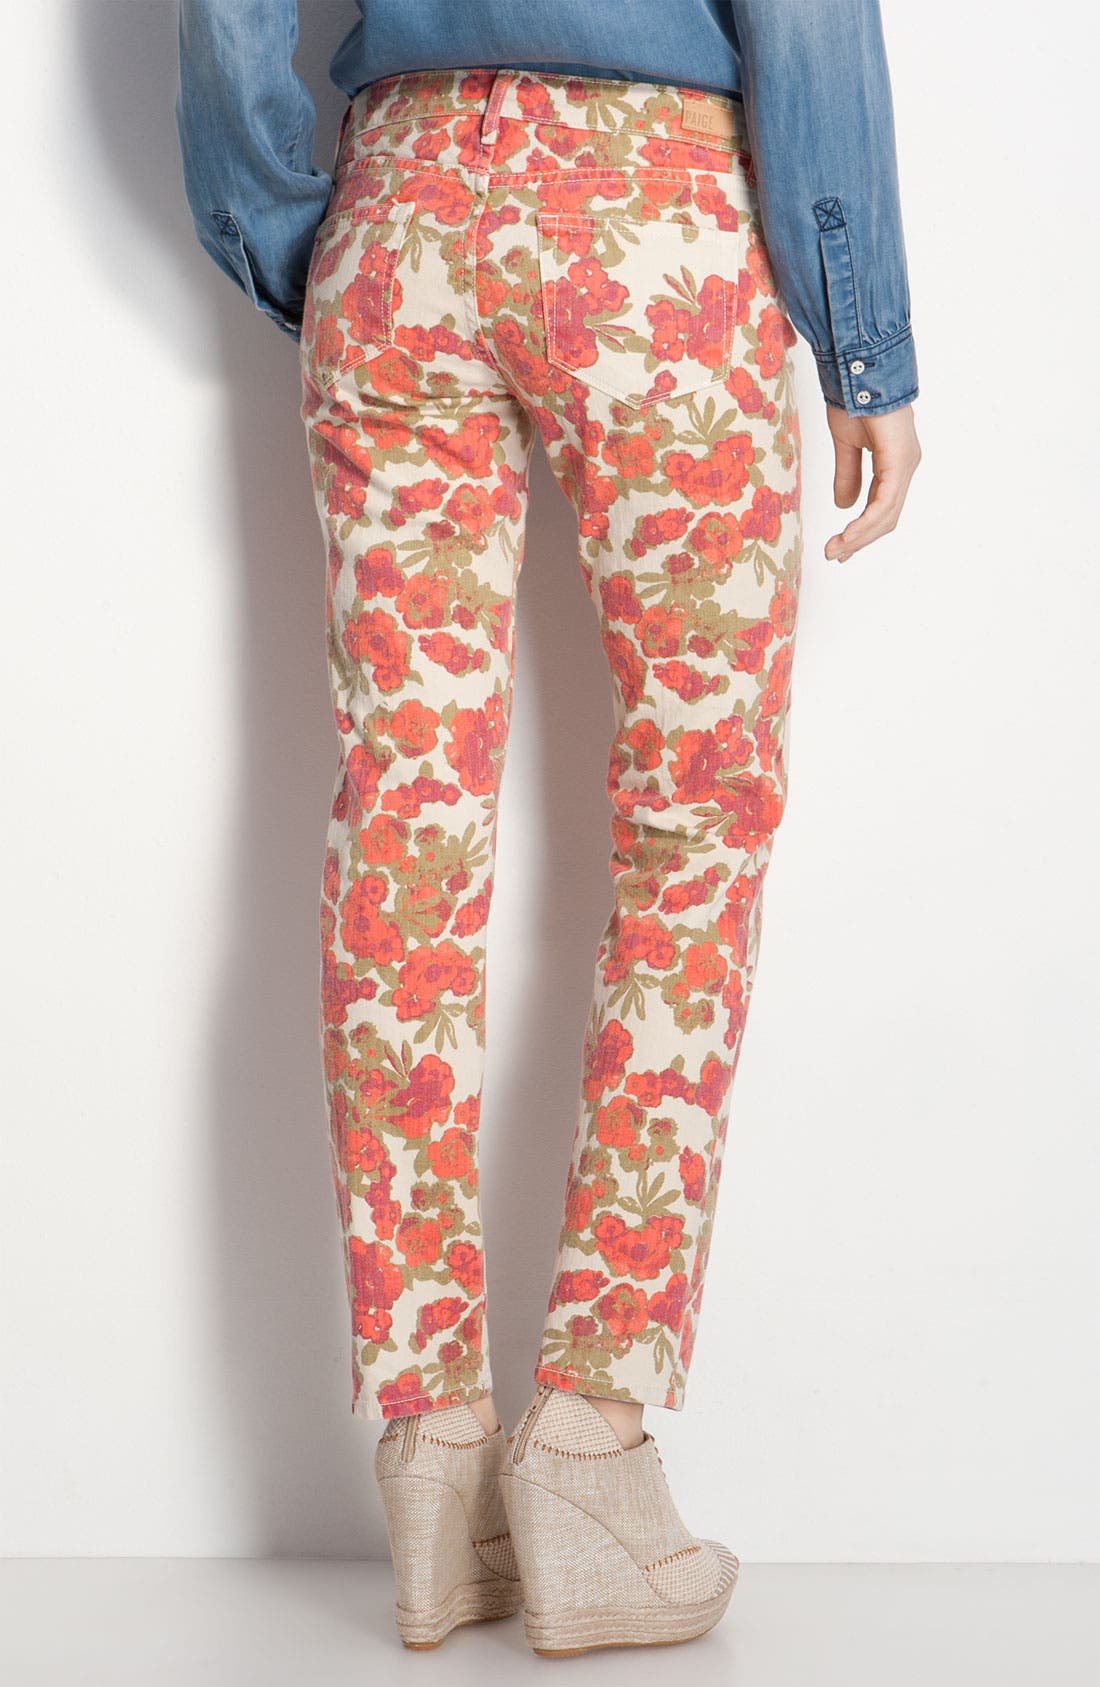 paige floral jeans